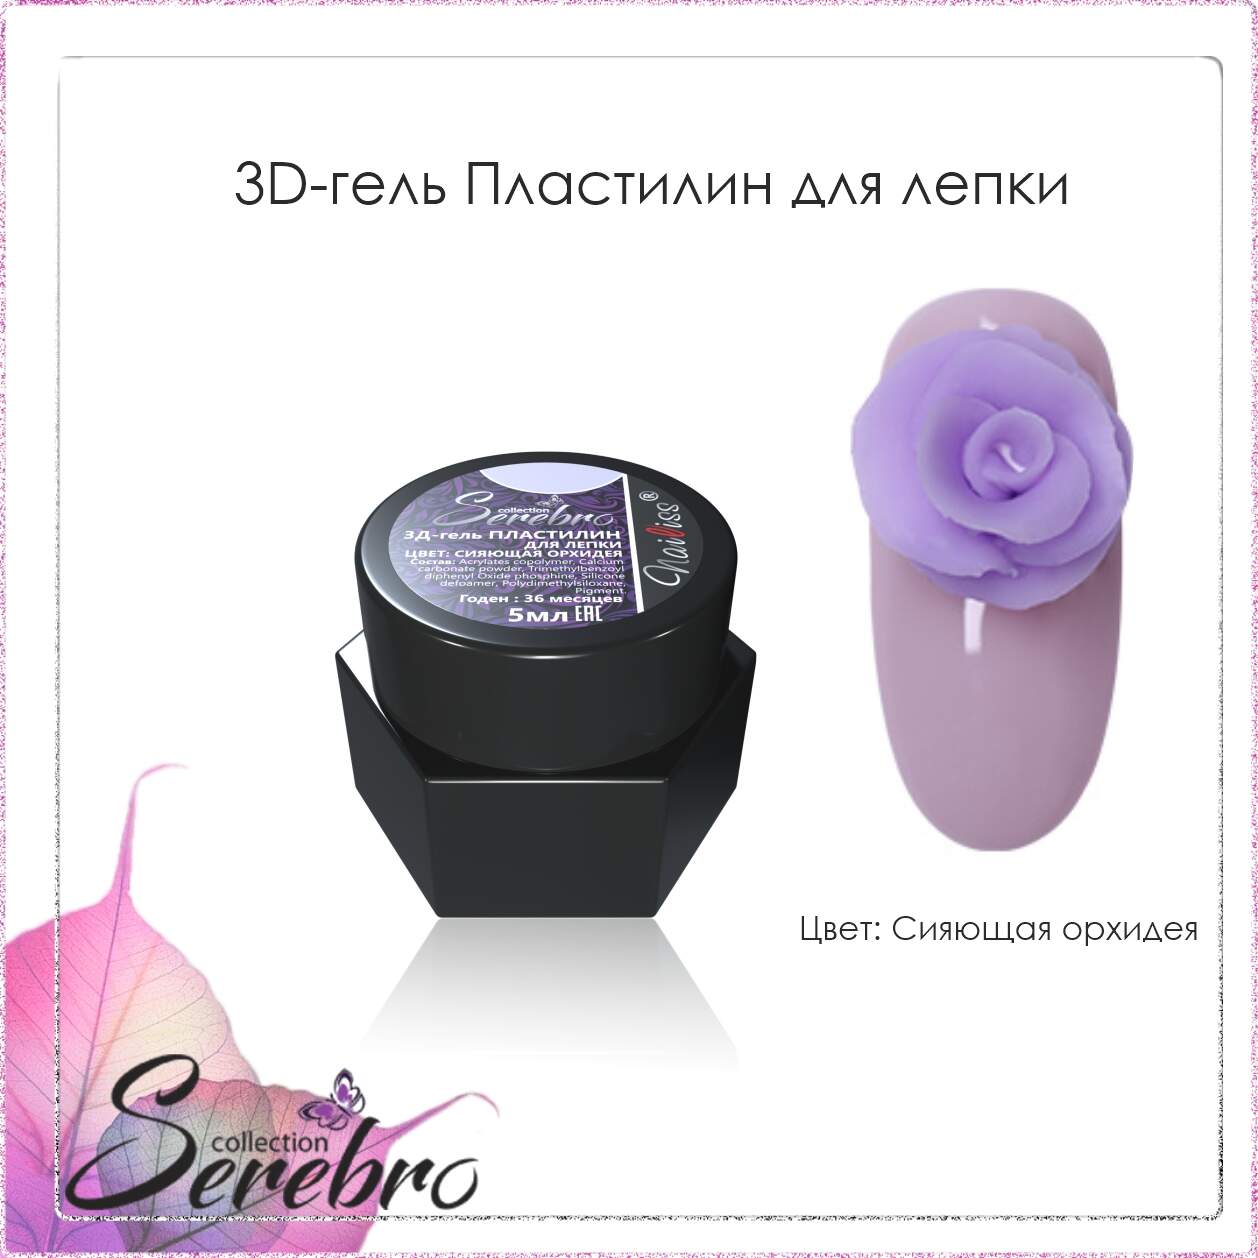 3D гель Пластилин для лепки "Serebro" (сияющая орхидея), 5 мл